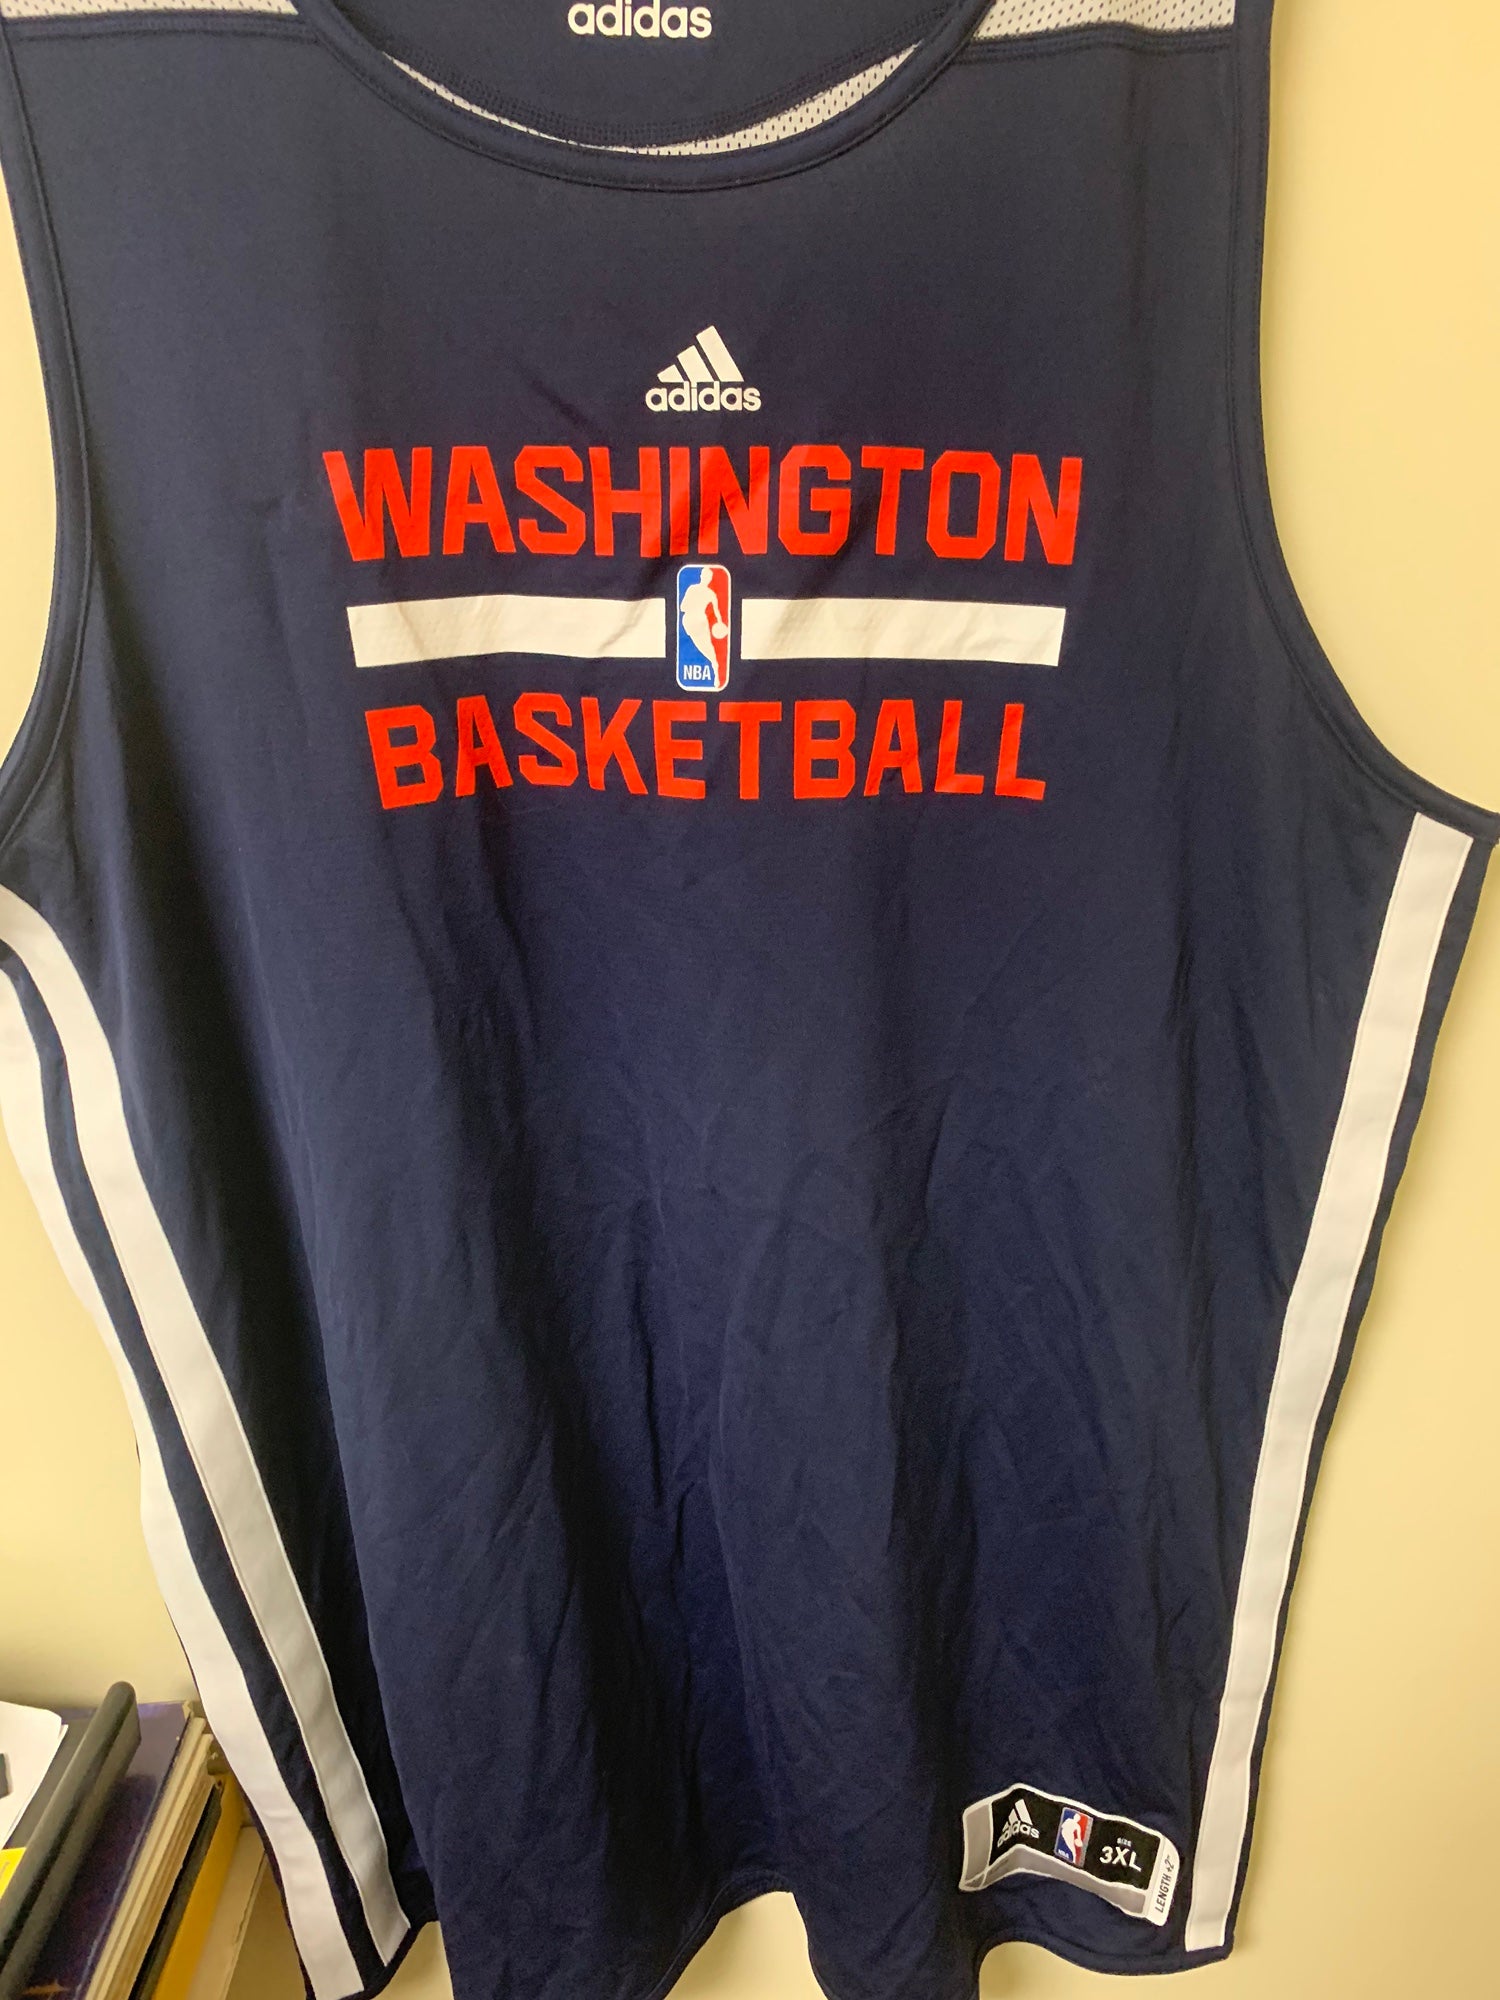  adidas Washington Wizards NBA White NBA Authentic On